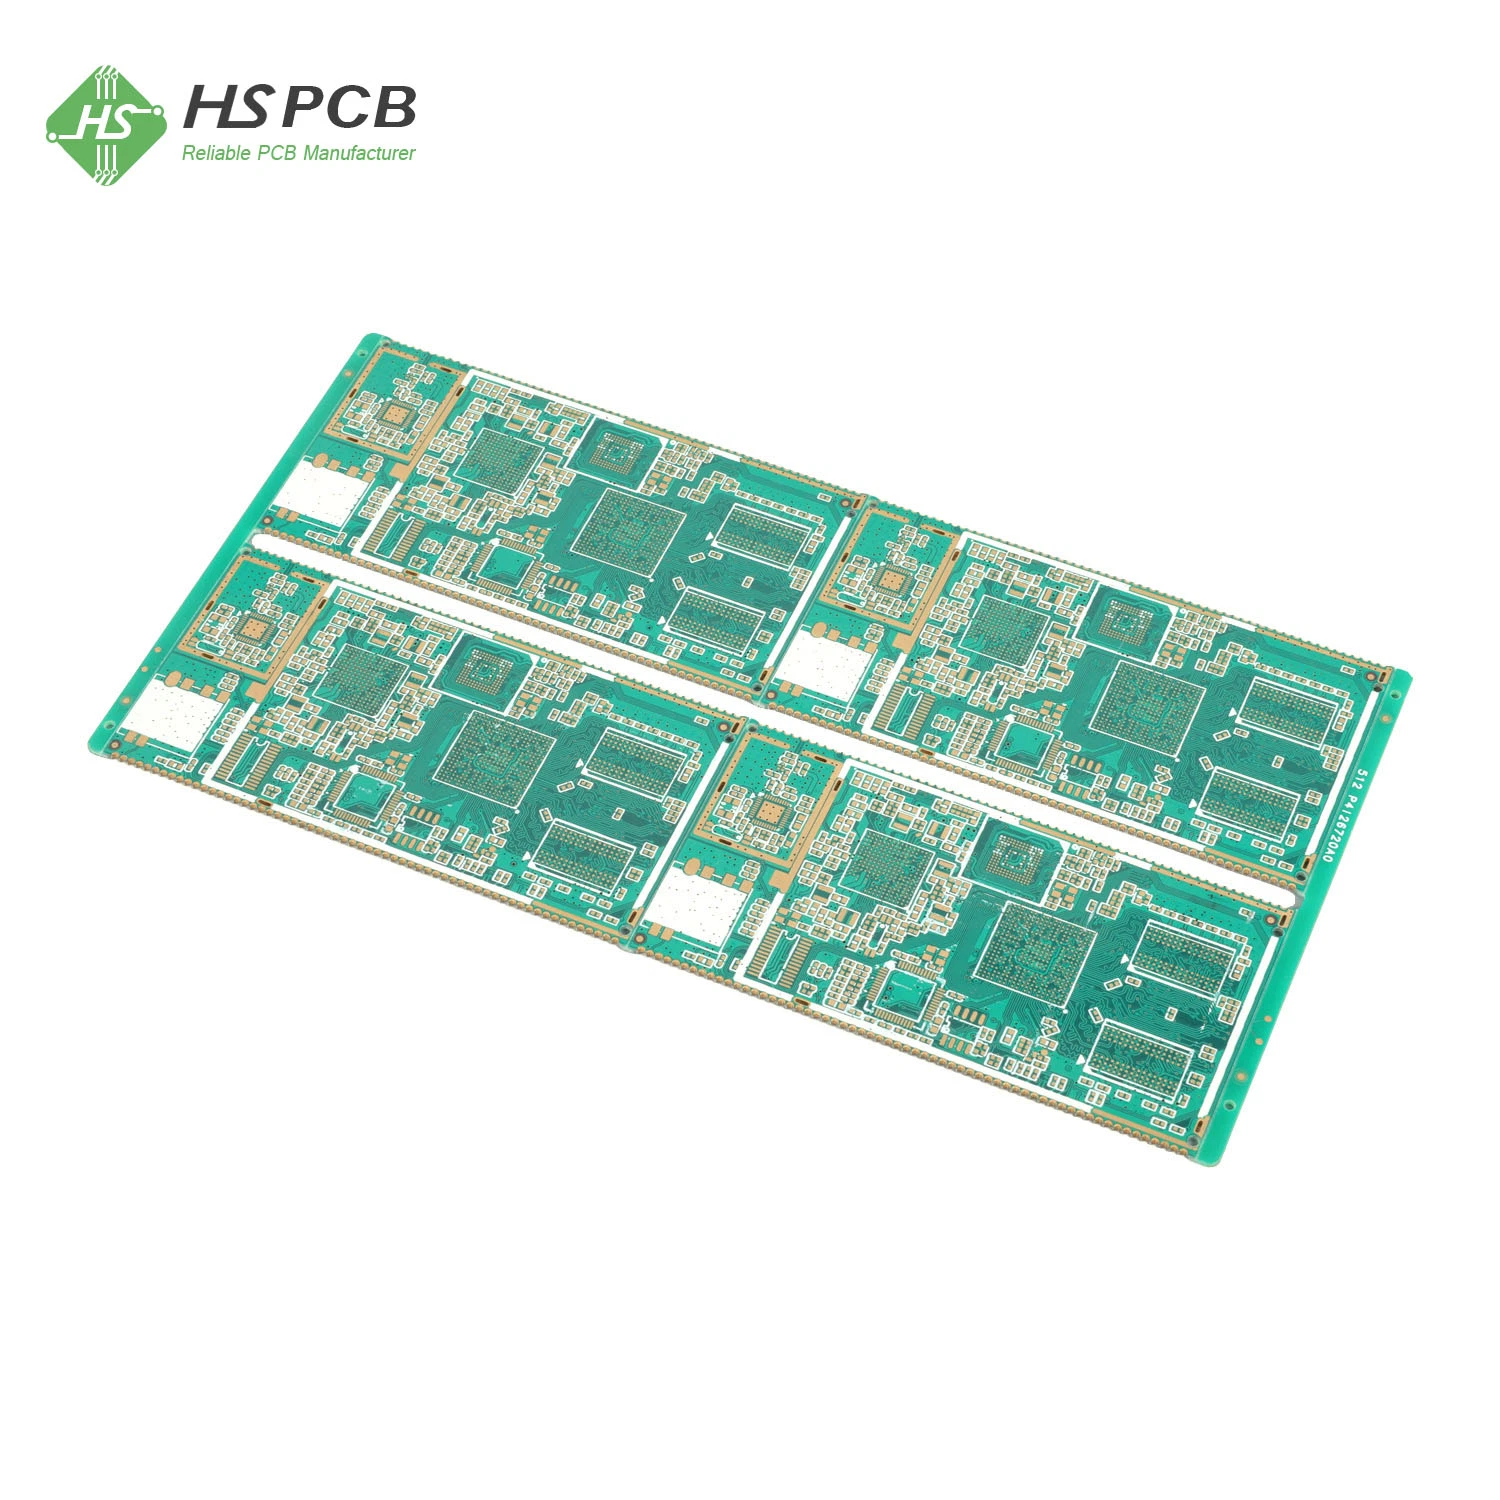 Fabricant de cartes de circuits imprimés multicouches de haute qualité pour l'électronique grand public